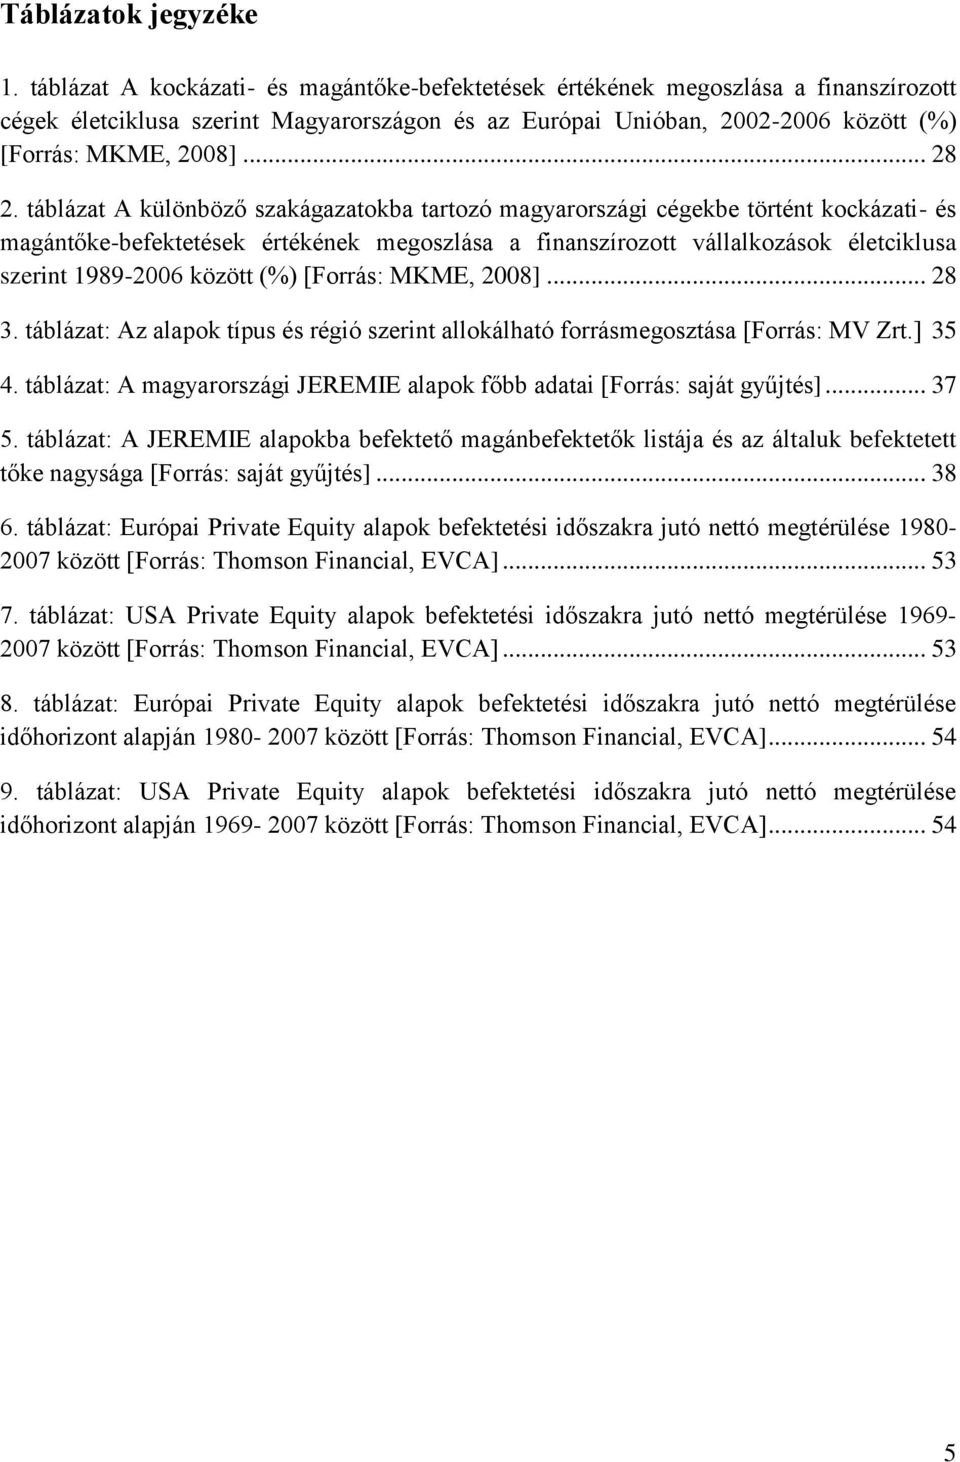 táblázat A különböző szakágazatokba tartozó magyarországi cégekbe történt kockázati- és magántőke-befektetések értékének megoszlása a finanszírozott vállalkozások életciklusa szerint 1989-2006 között